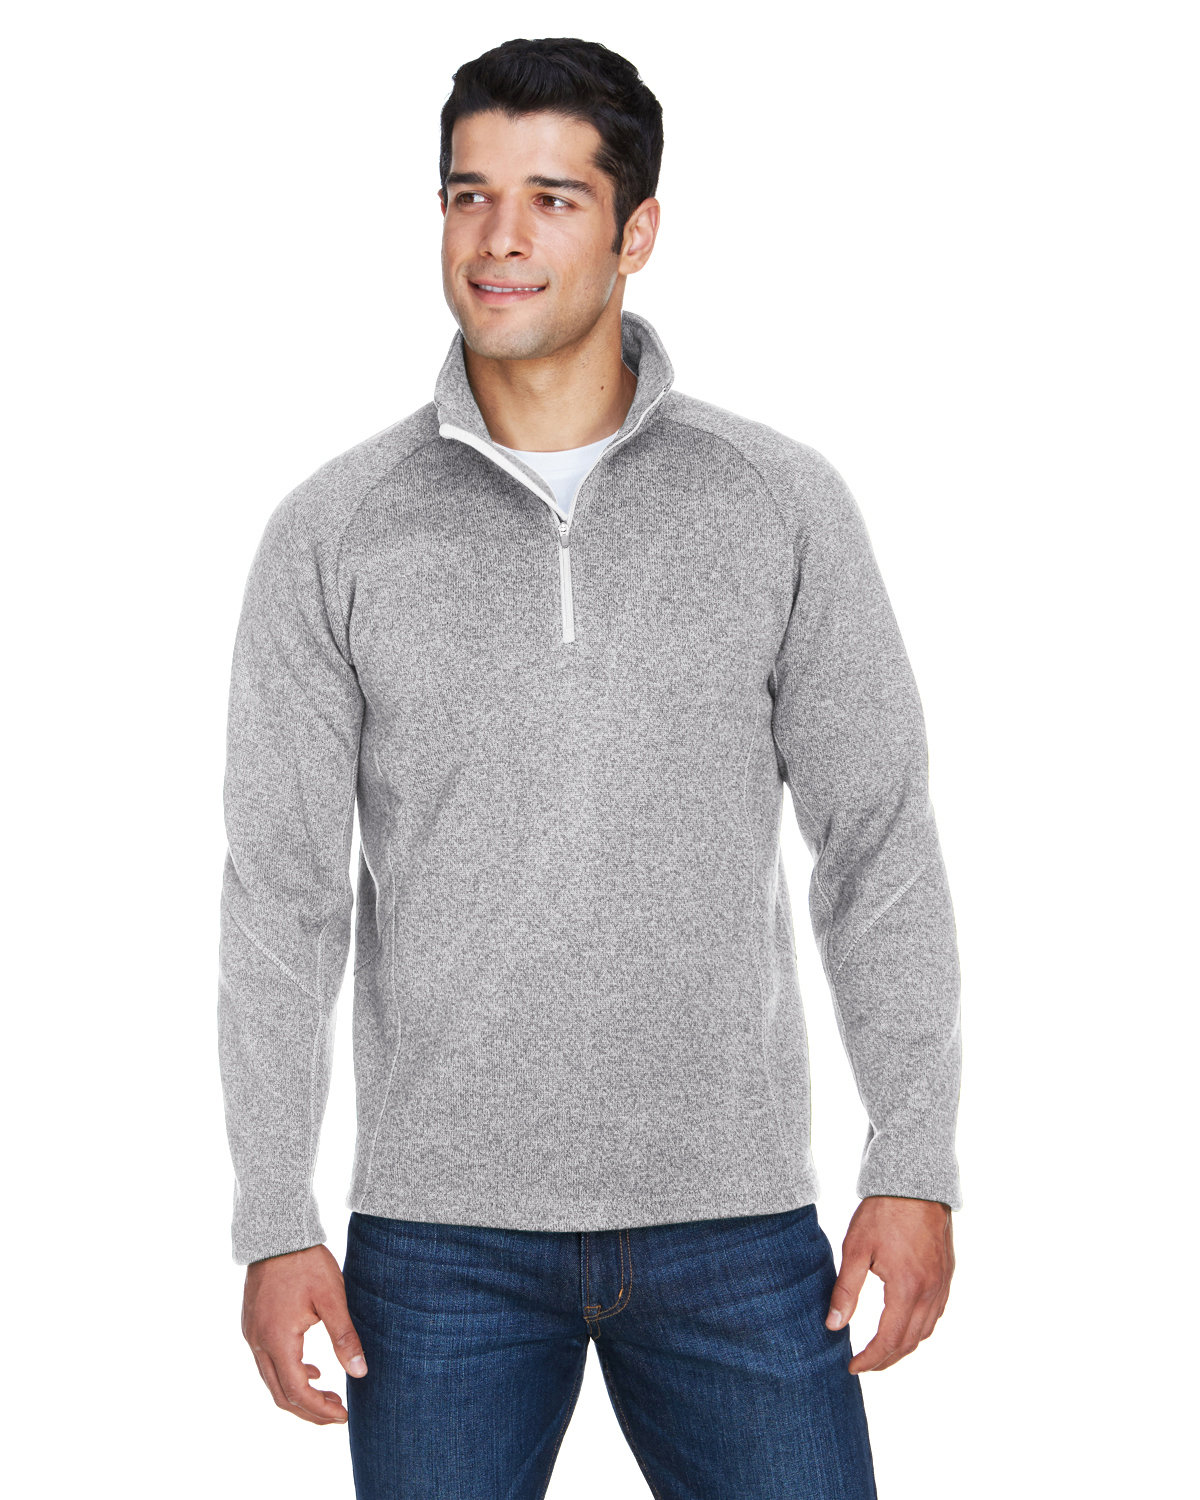 Devon & Jones Adult Bristol Sweater Fleece Quarter Zip